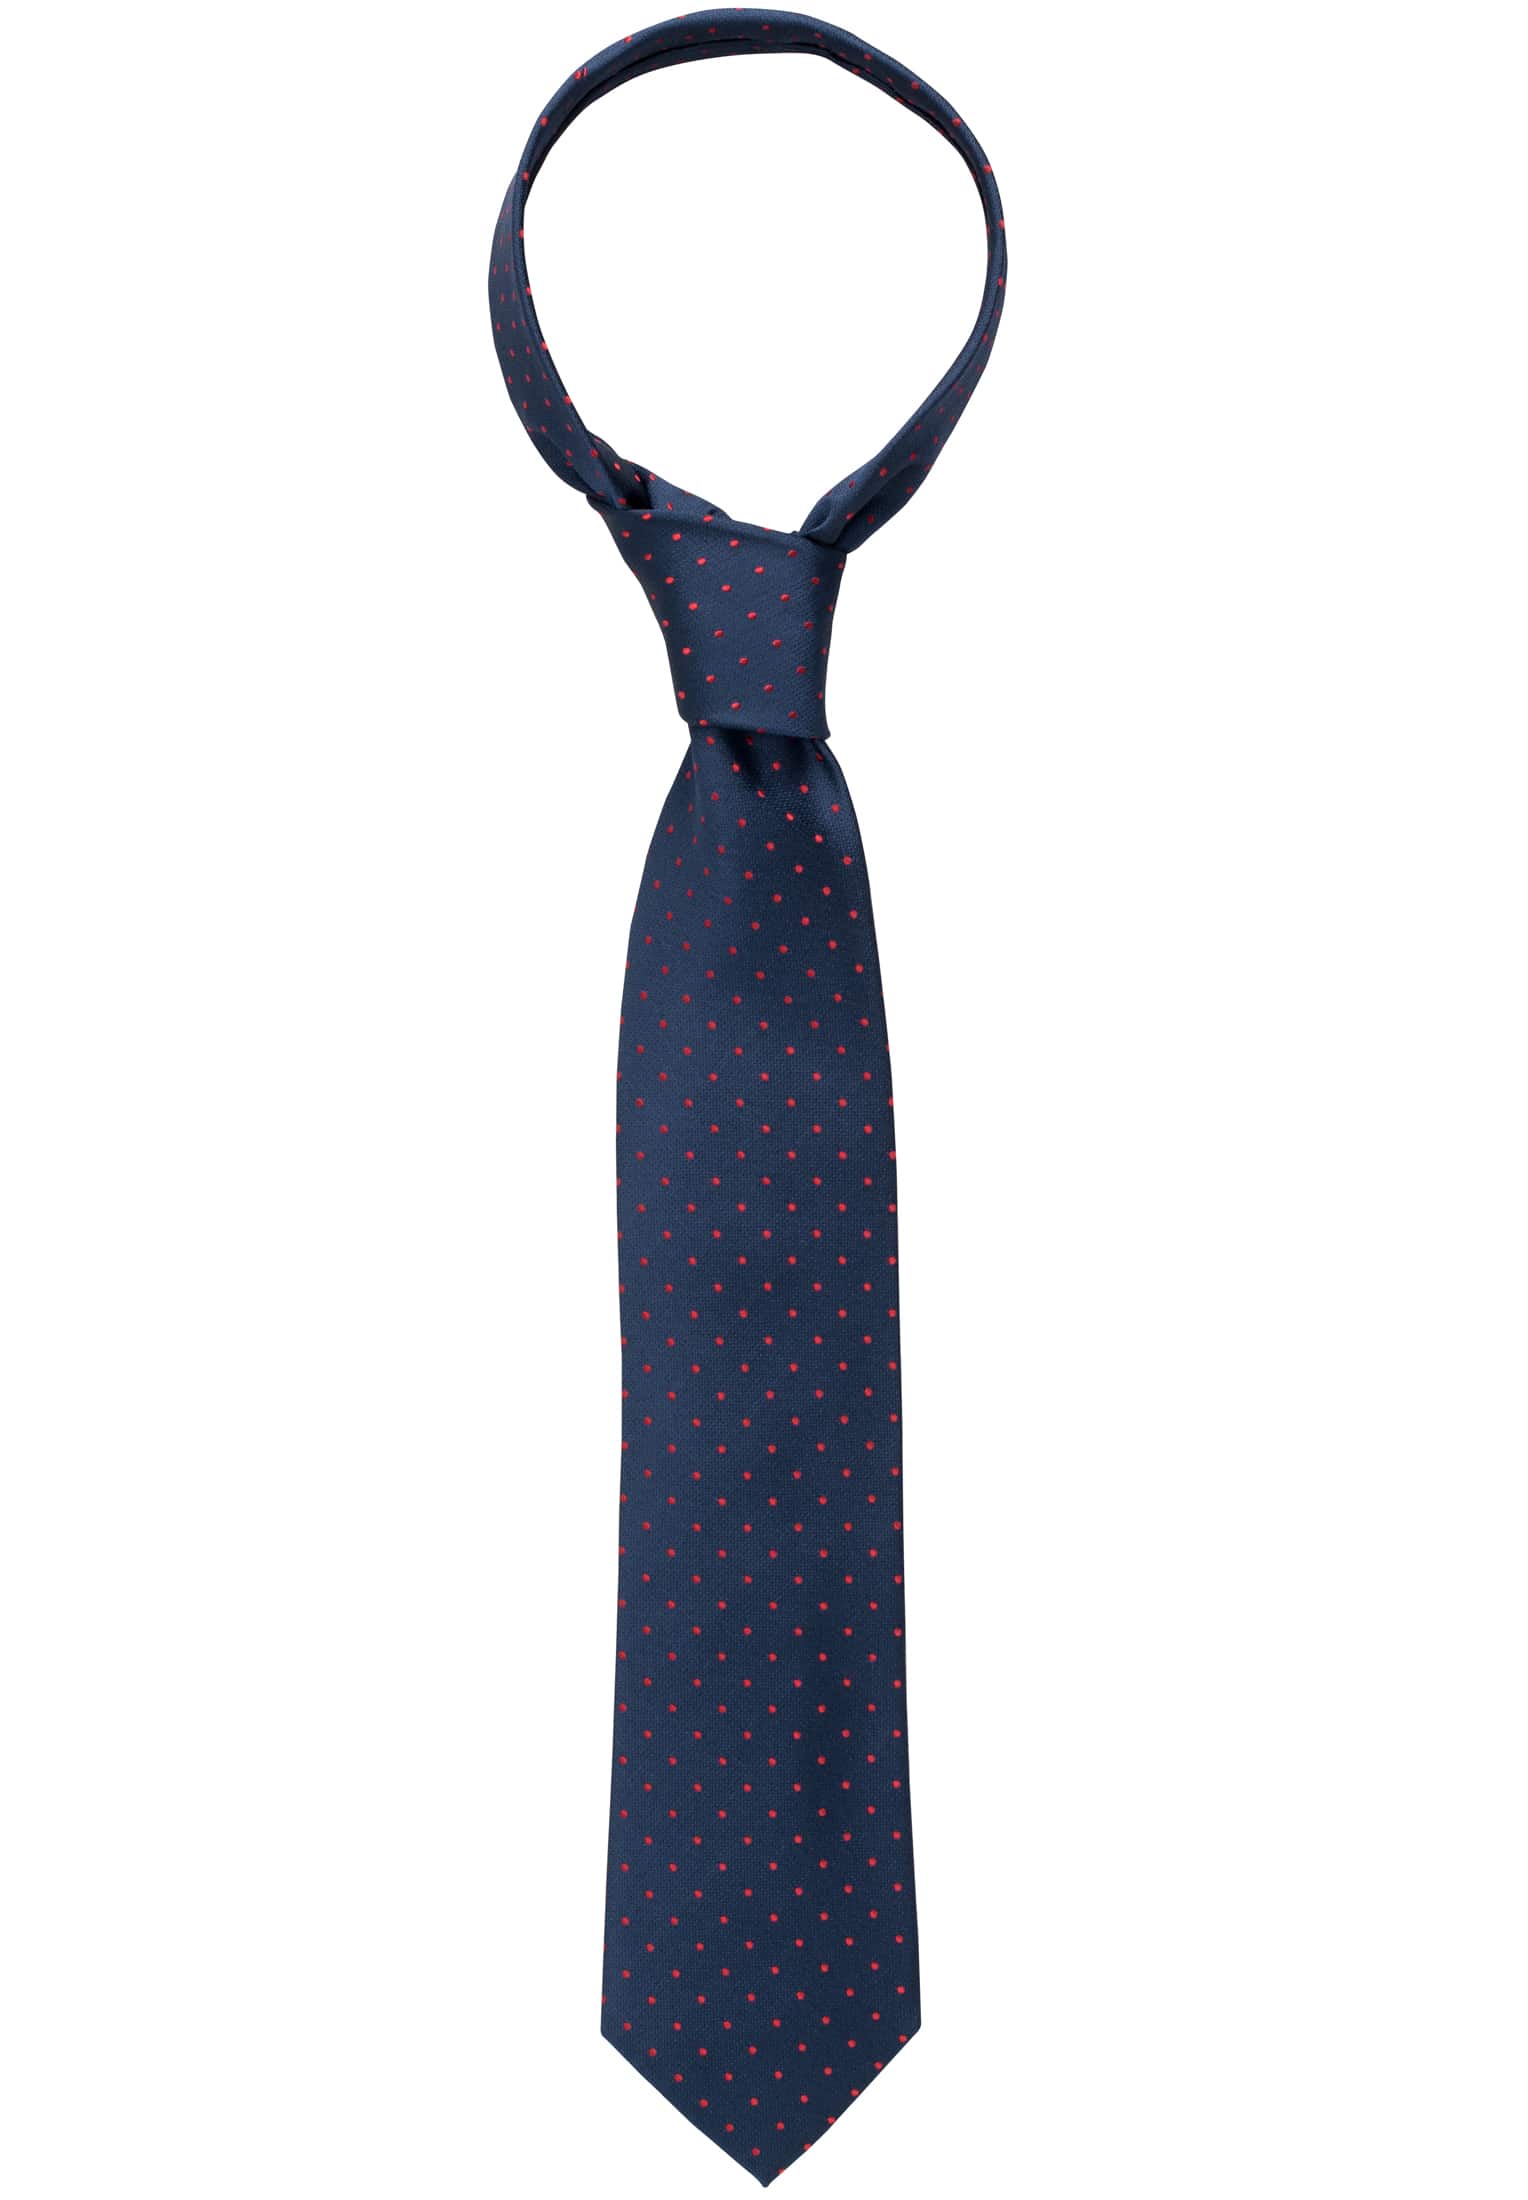 Cravate bleu foncé tacheté